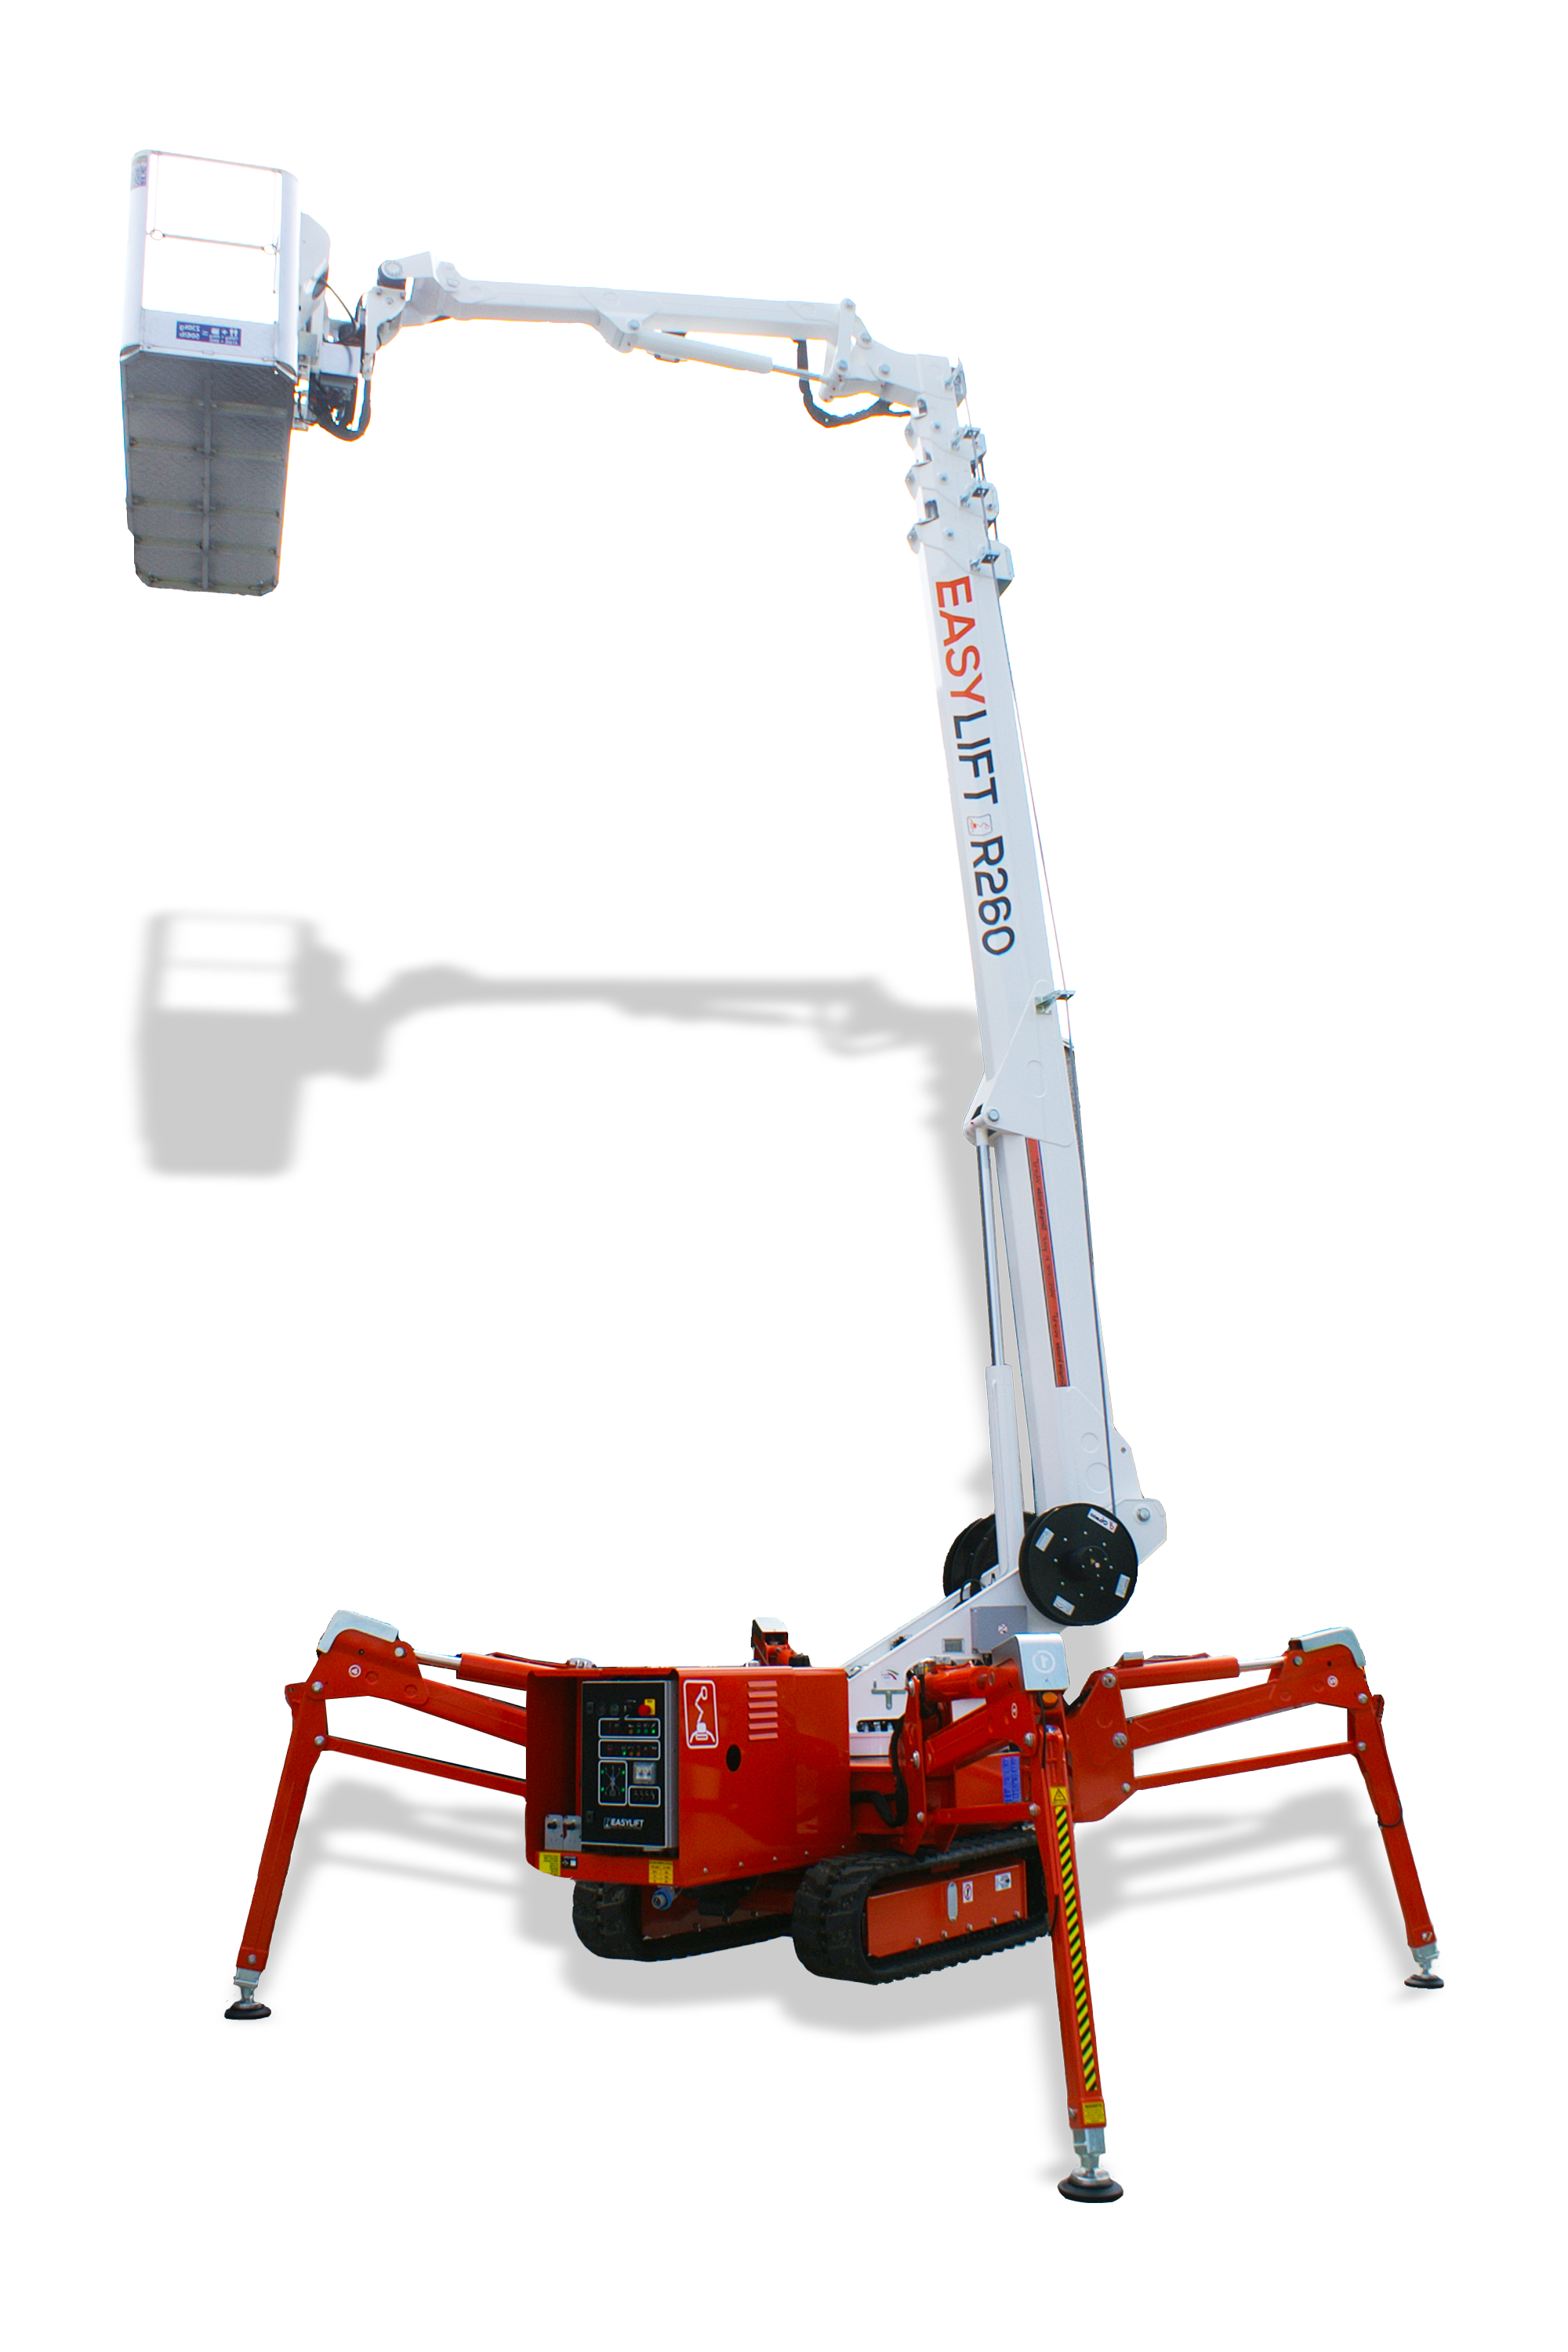 Piattaforma cingolata telescopica Easy-lift da 26m modello R260